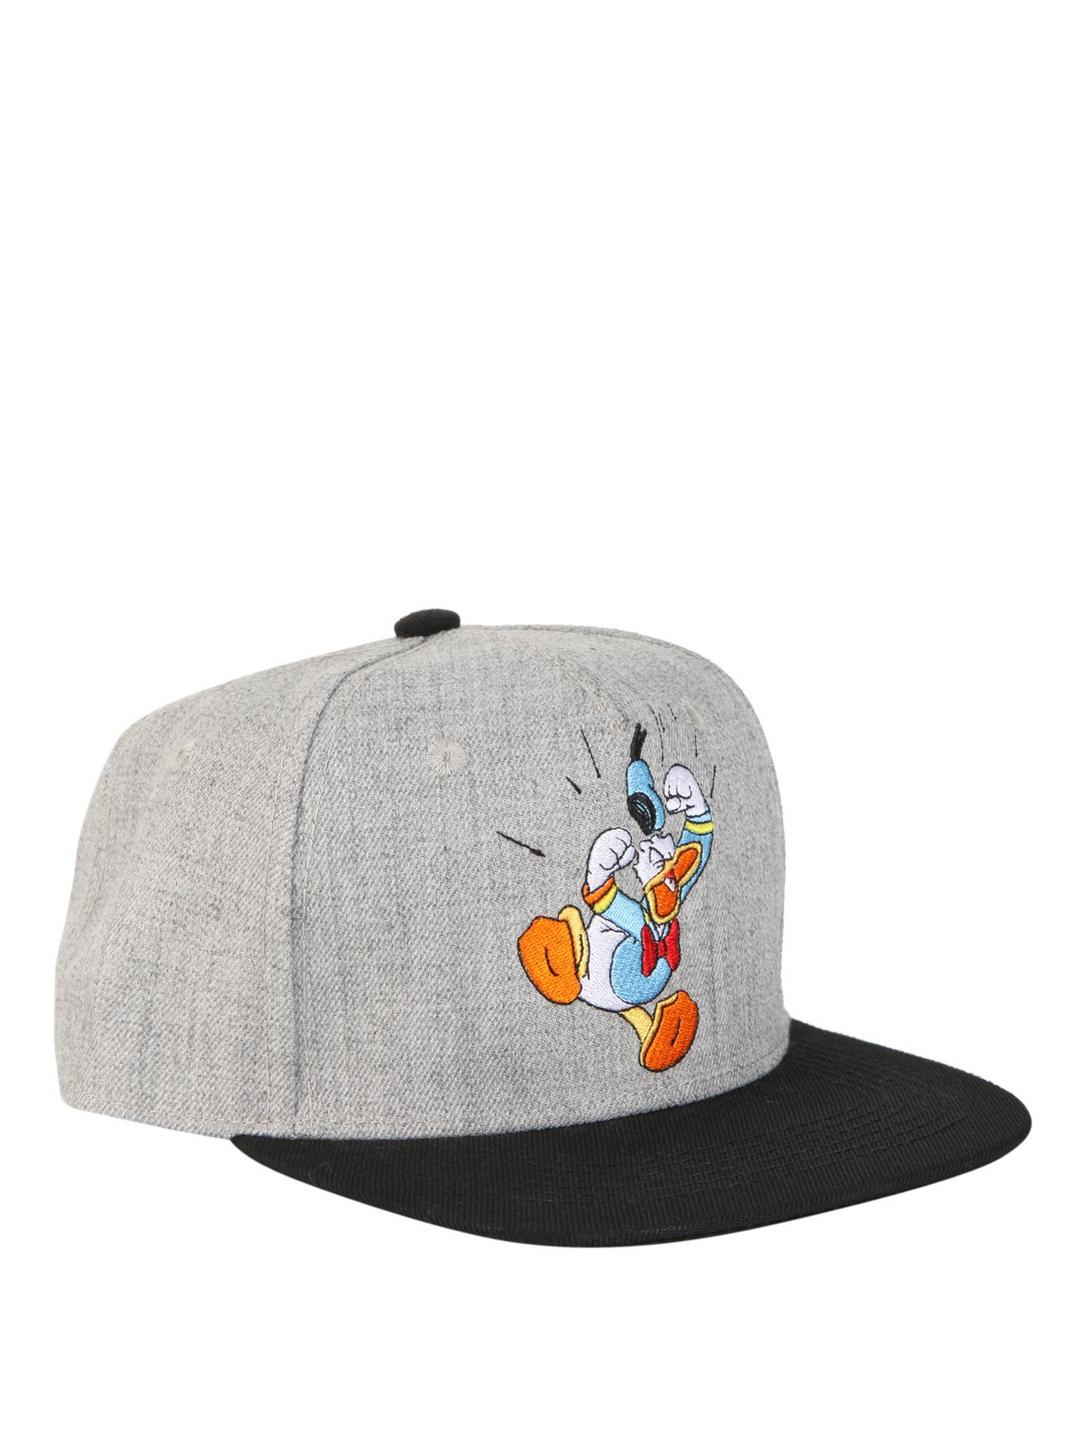 Disney Donald Duck Snapback Hat, , hi-res